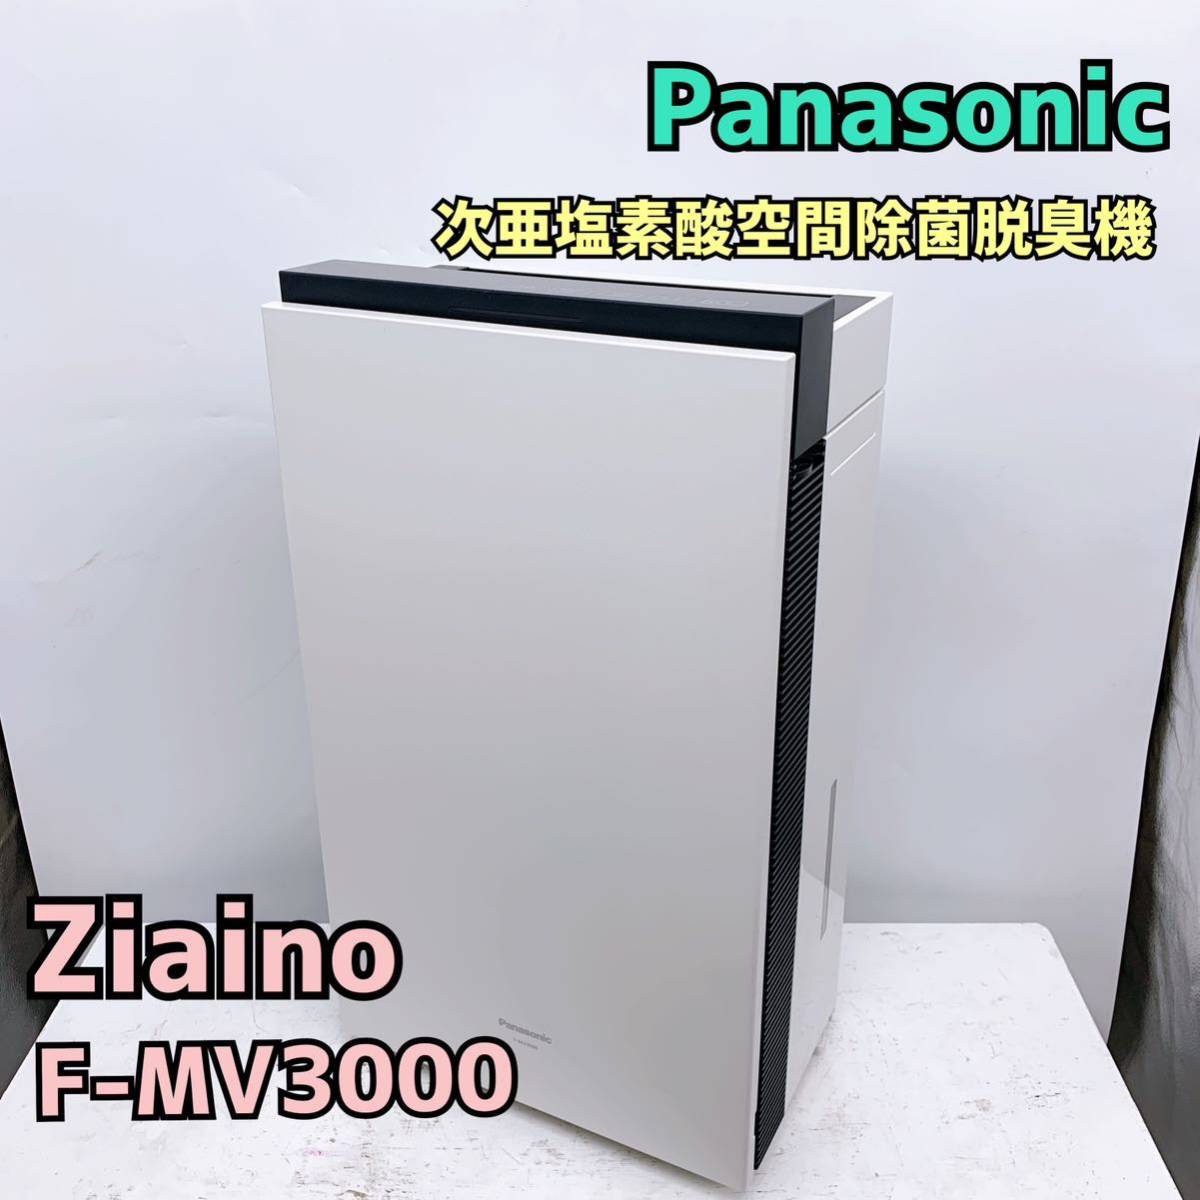 ジアイーノ Panasonic F-MV3000 次亜塩素酸 空間除菌脱臭機-